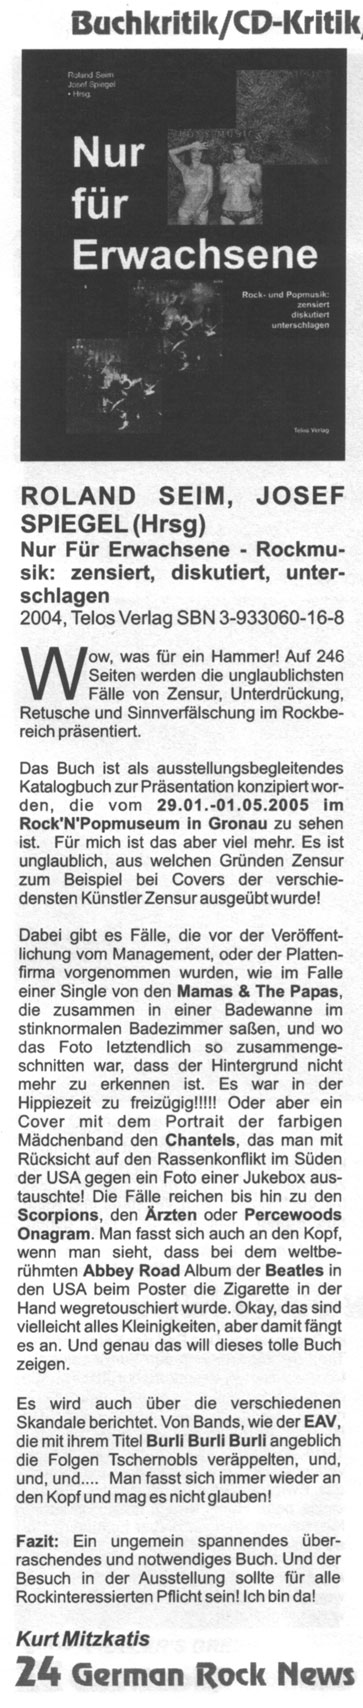 German Rock News-Rezension "Nur für Erwachsene"